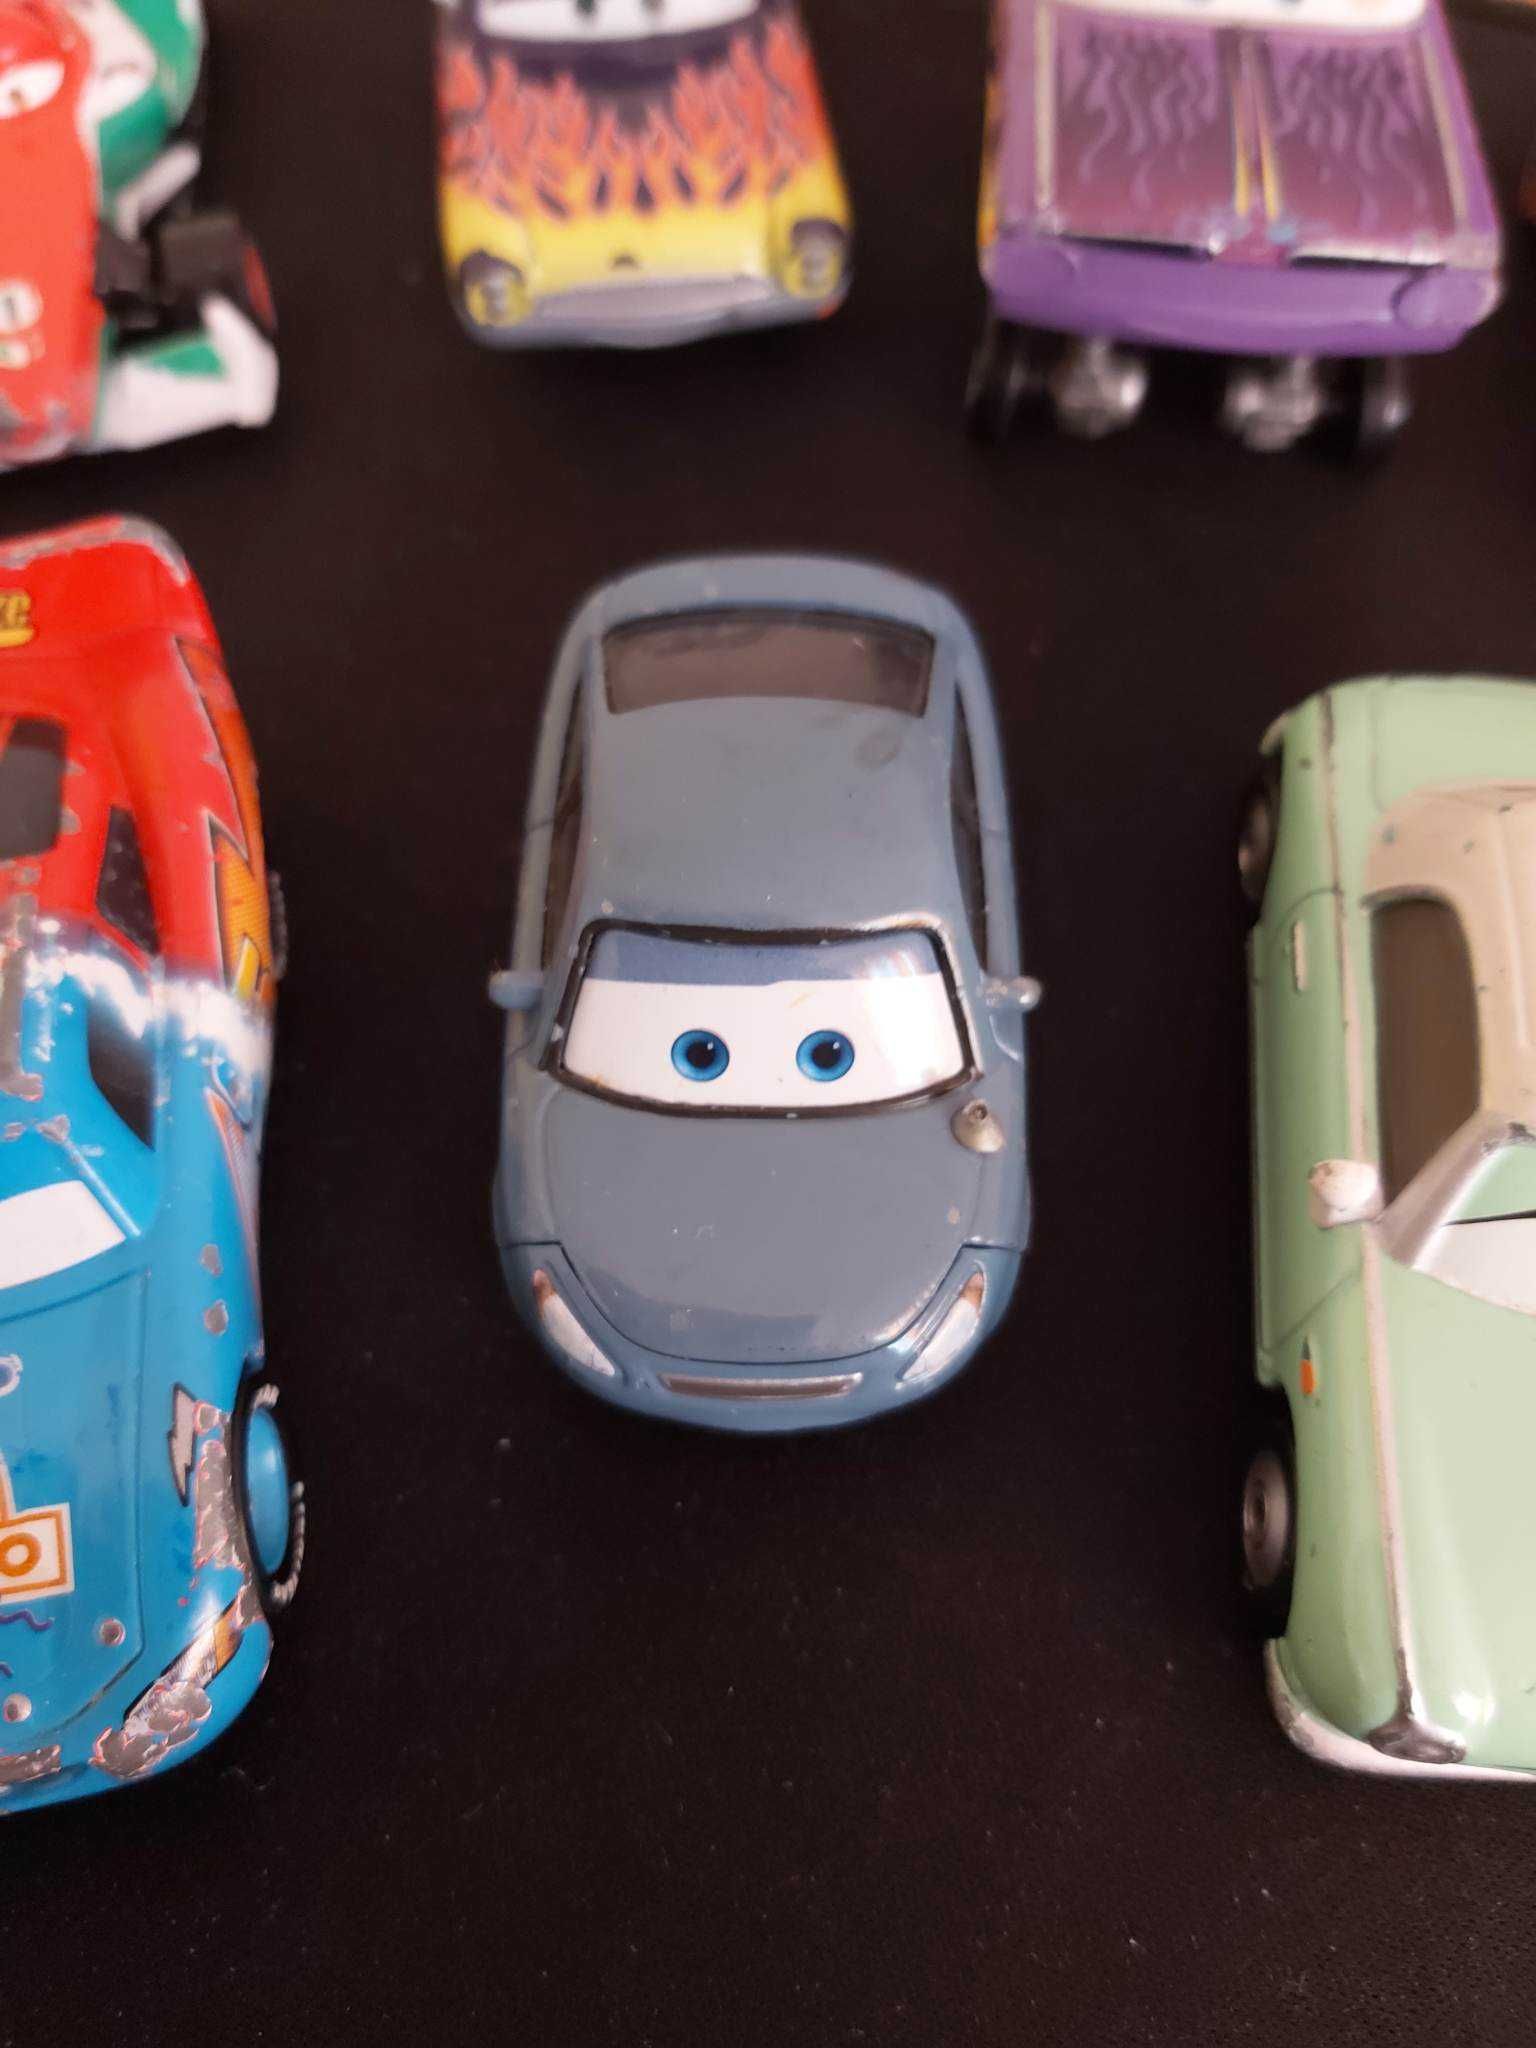 Masinute din seria Disney Cars... marca Mattel, seria 2013, 1:55